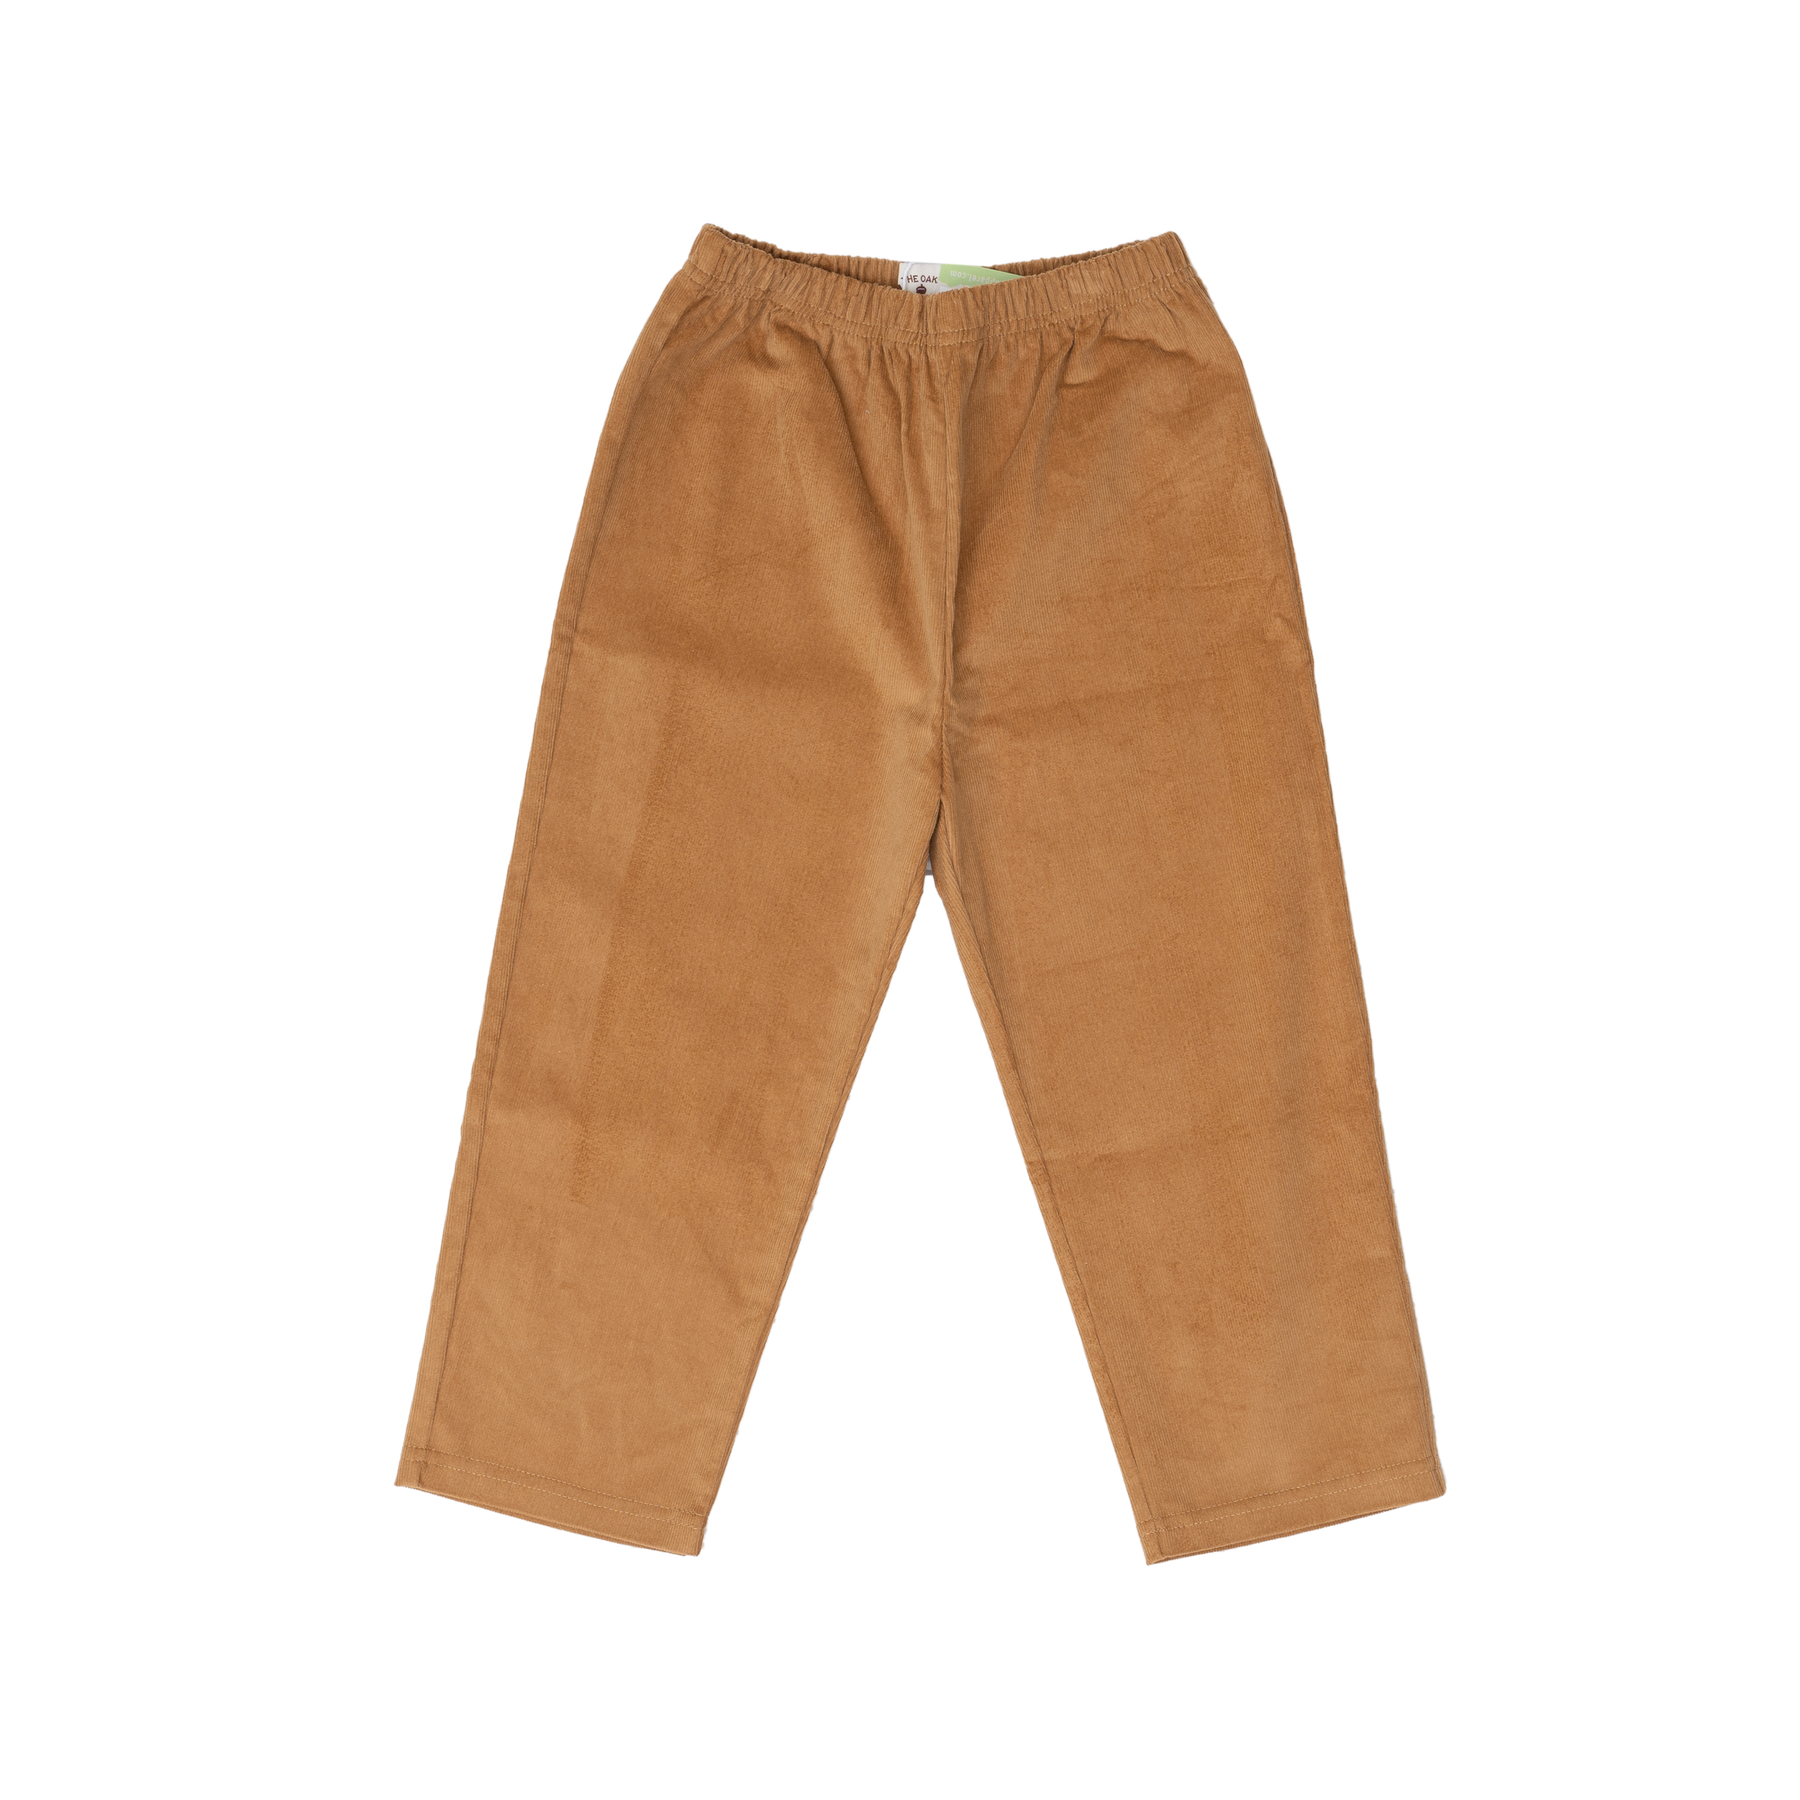 Child Pants Boys Pants Brown Corduroy Pants Cargo Pants Brown Pants Casual  Pants Childrens Pant Kids Pants Streetwear Golf Pants - Etsy